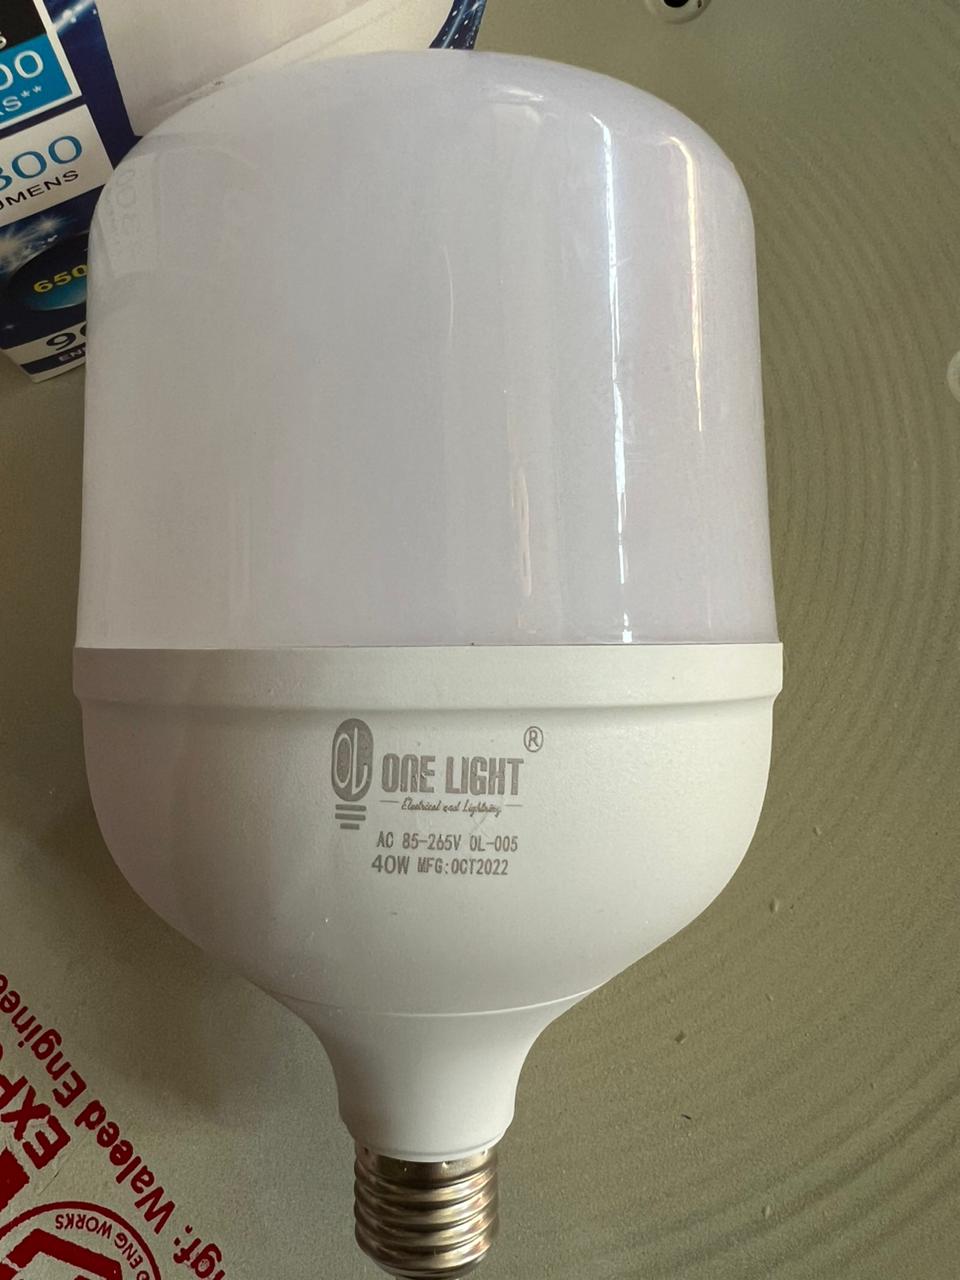 one light led 40 watt blub